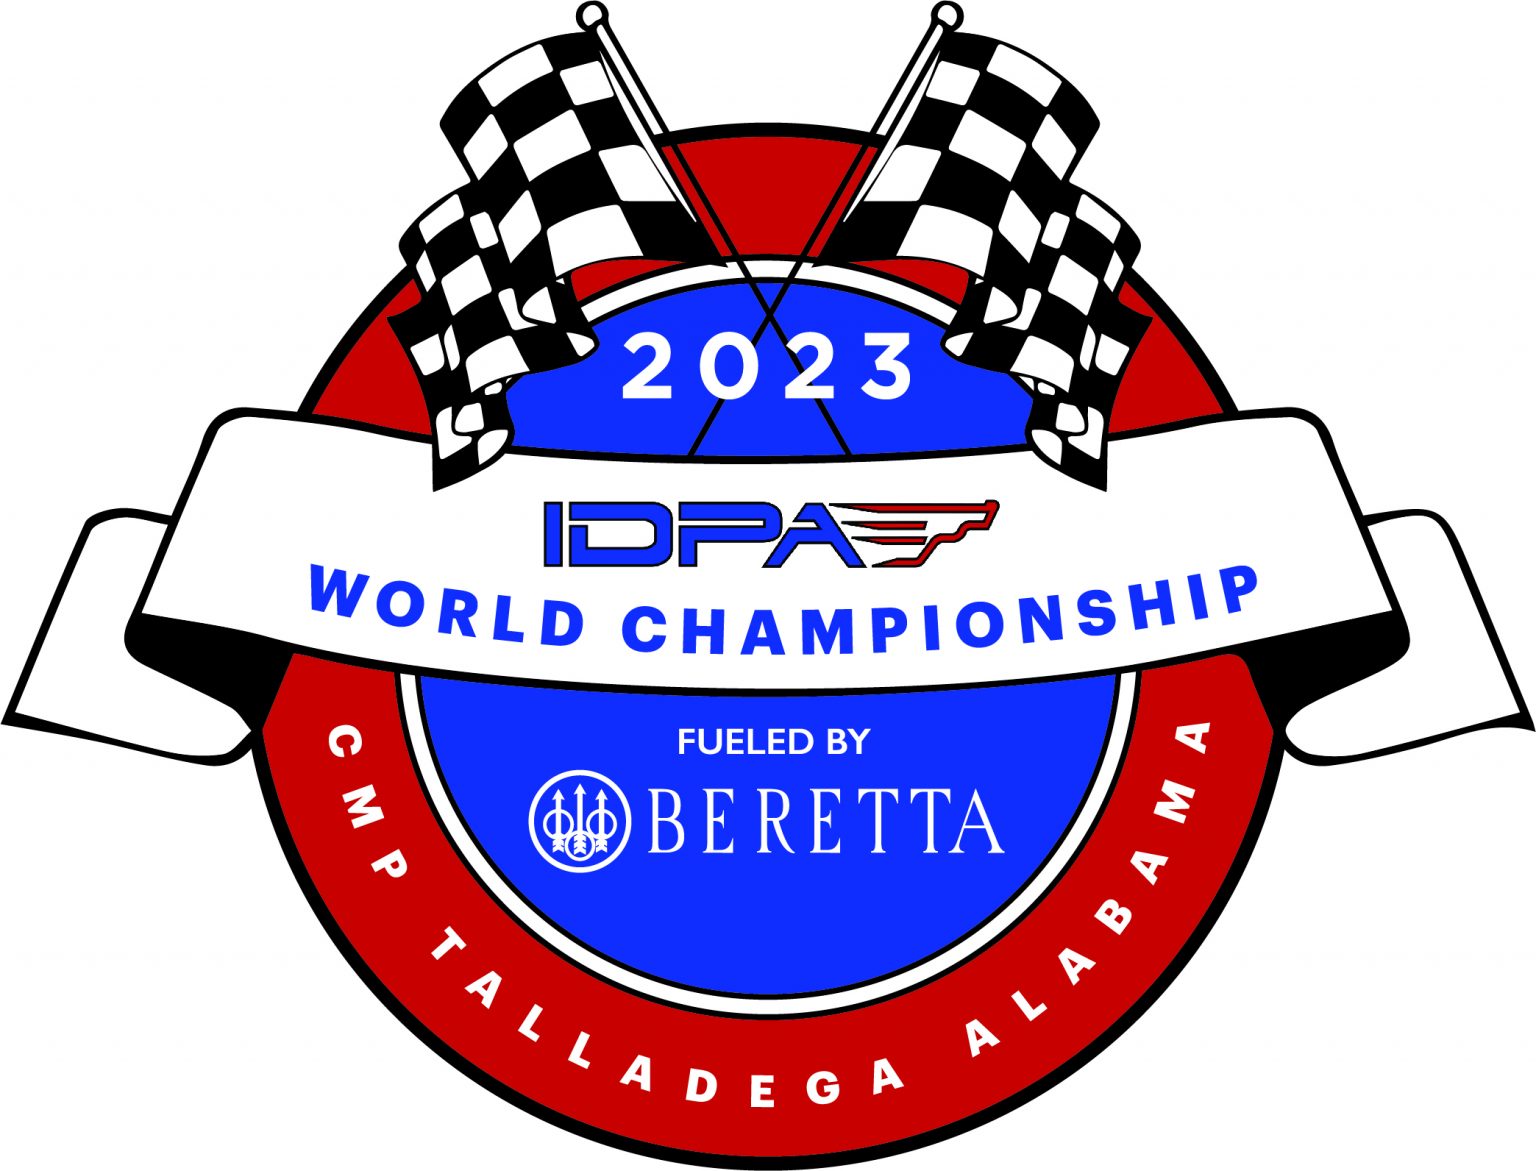 2023 IDPA World Championship Fueled by Beretta International